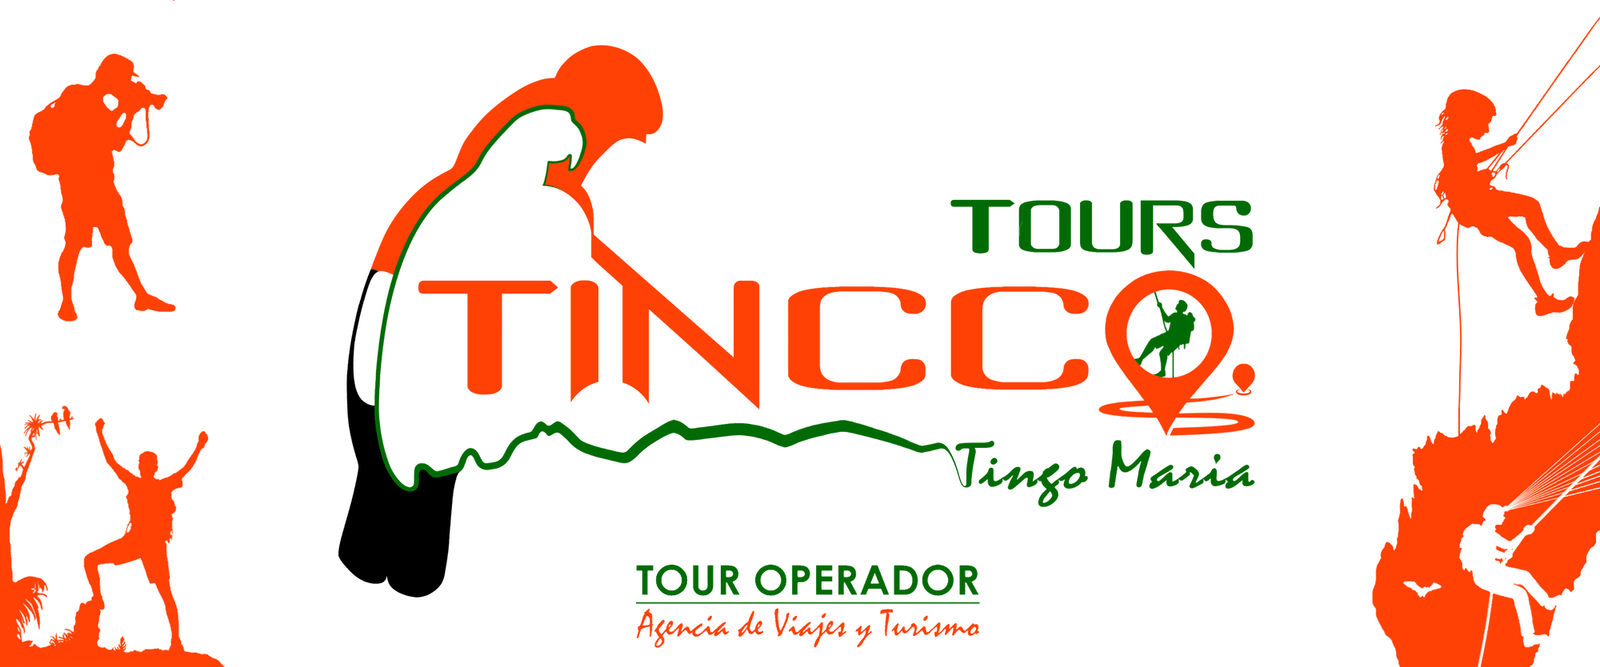 Logo Tincco Tours Tingo María